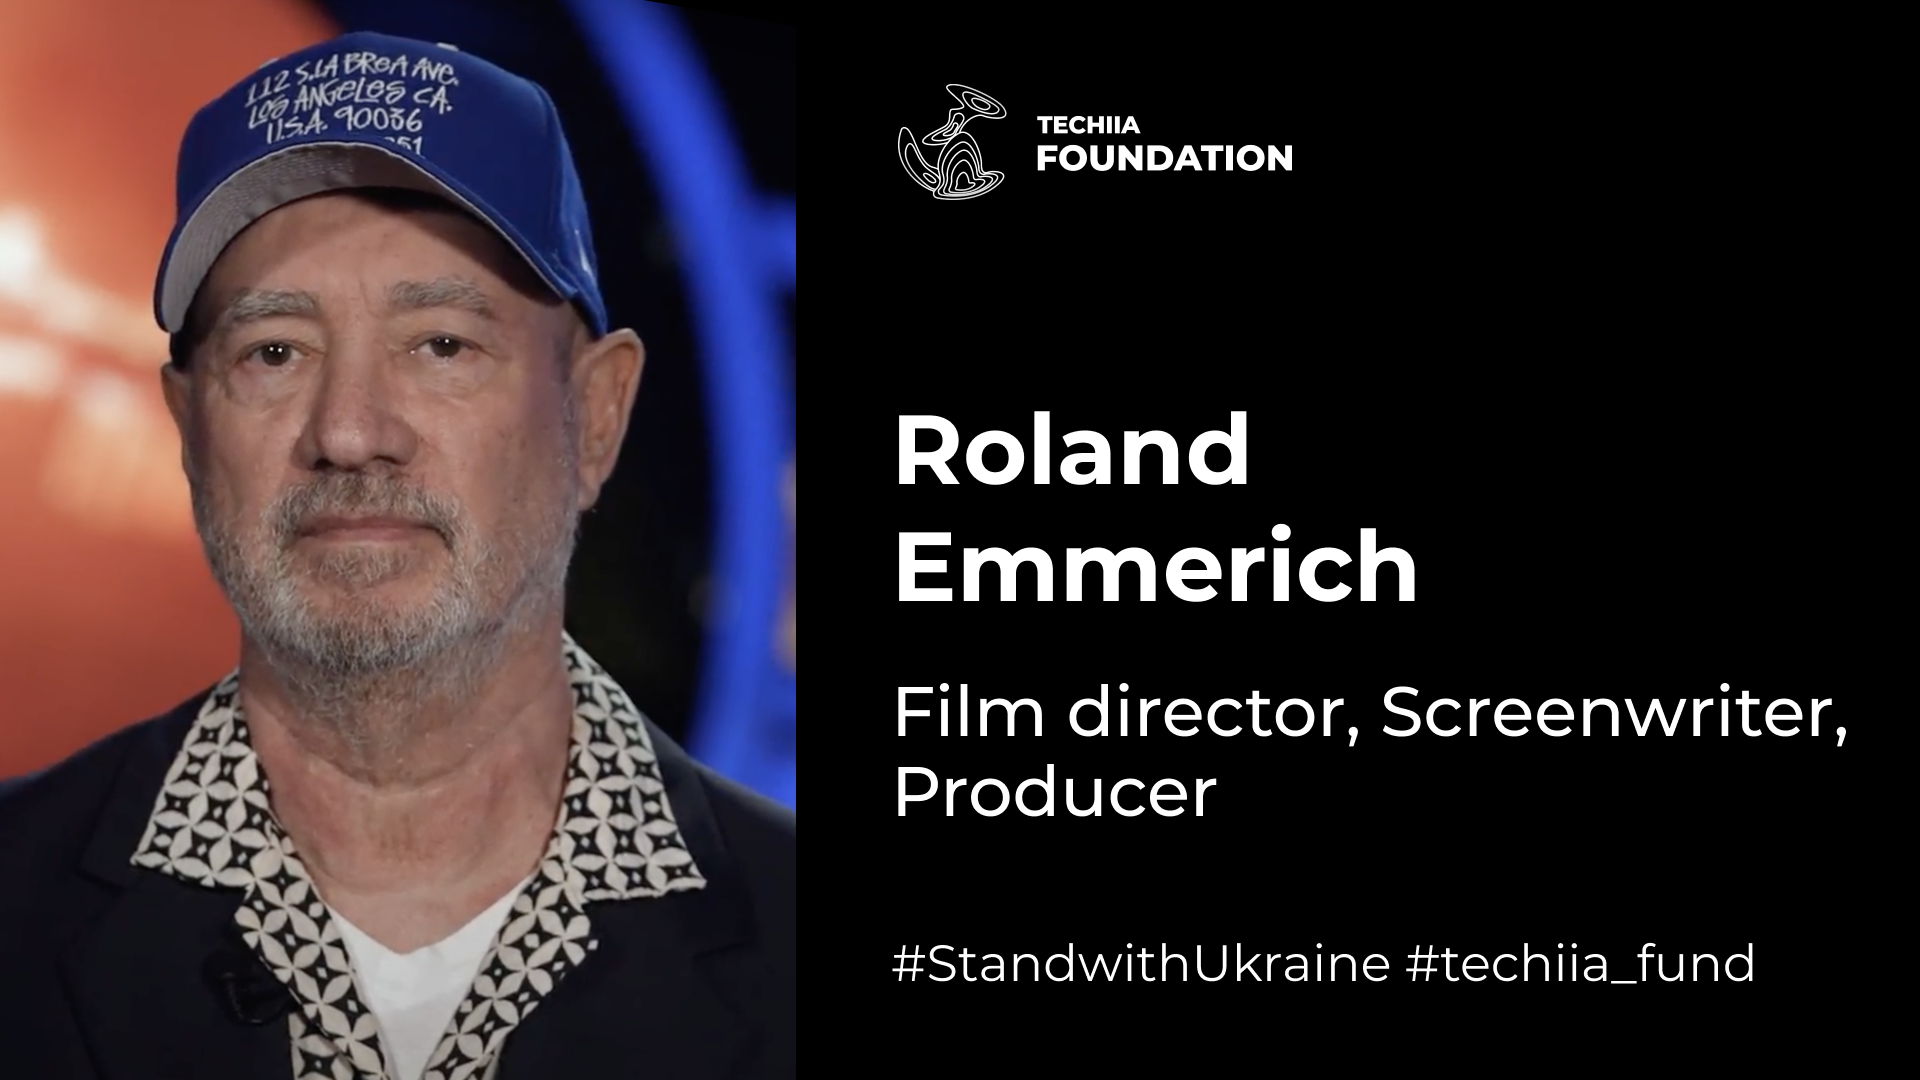 "Os ucranianos vão ganhar, tenho certeza disso", — disse o cineasta de Hollywood Roland Emmerich em sua declaração em apoio à Ucrânia